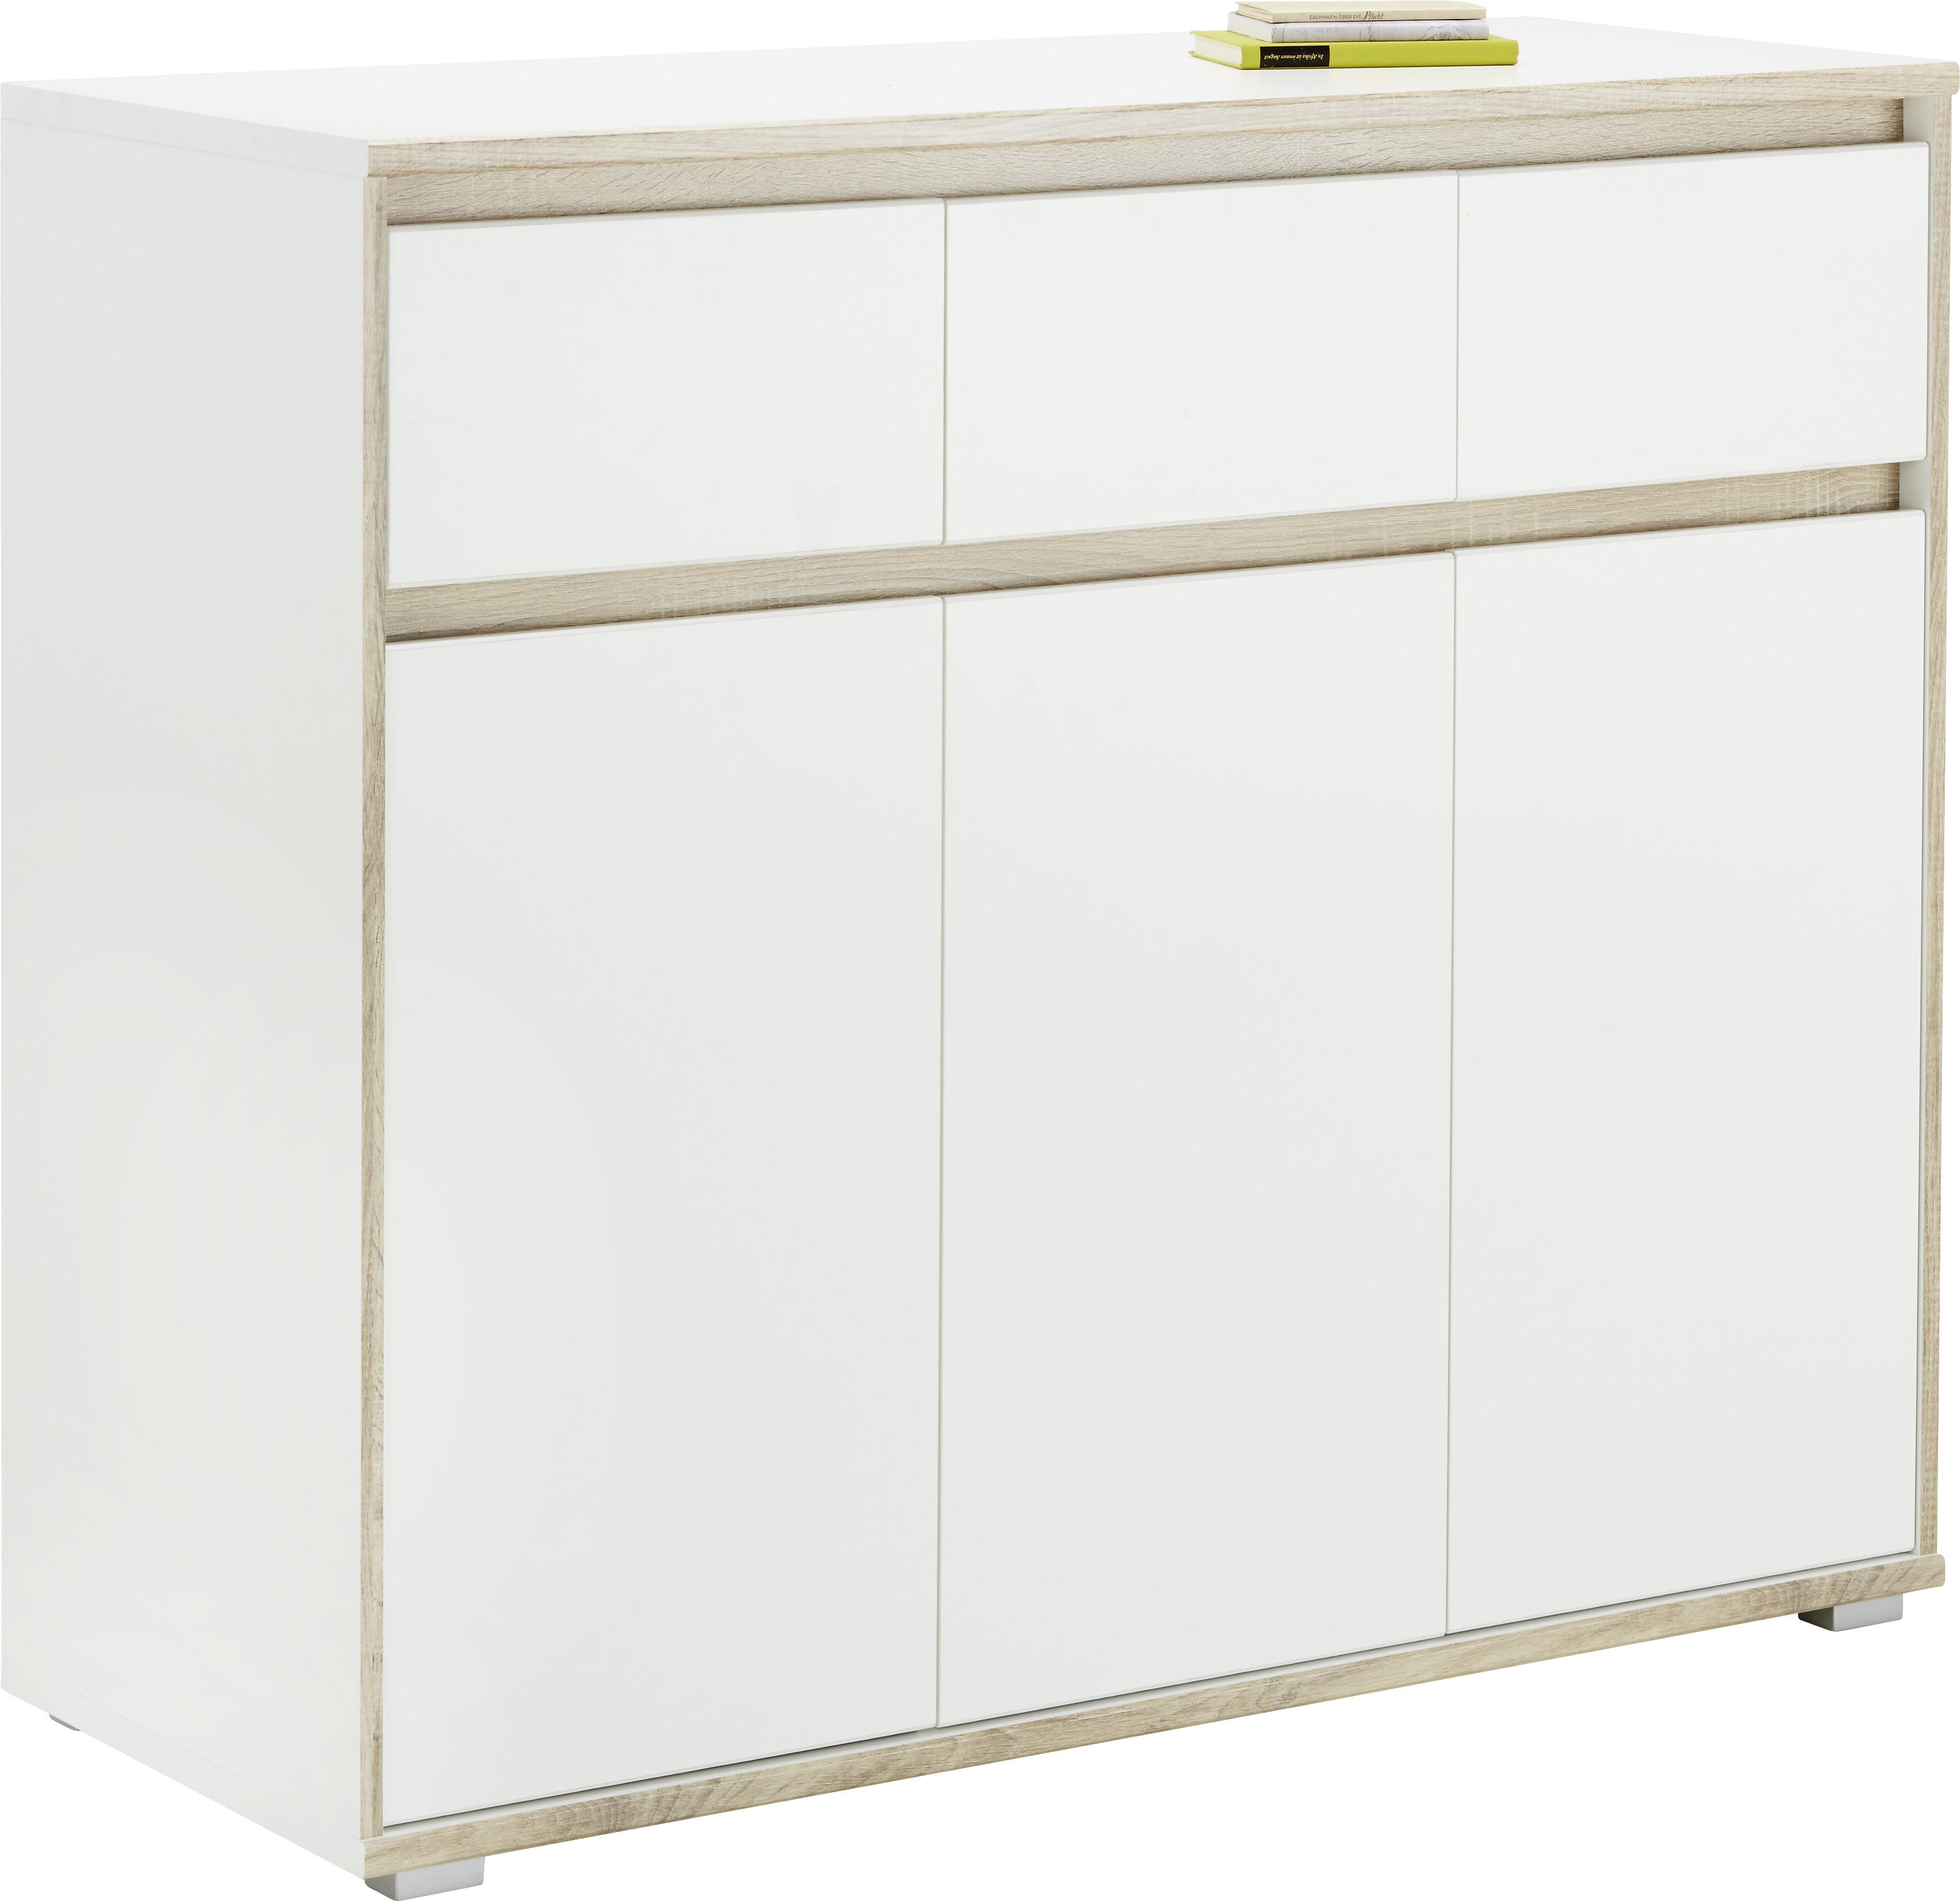 Sideboard in Weiß/Sonoma Eiche - Silberfarben/Weiß, MODERN, Holzwerkstoff (118cm) - Based